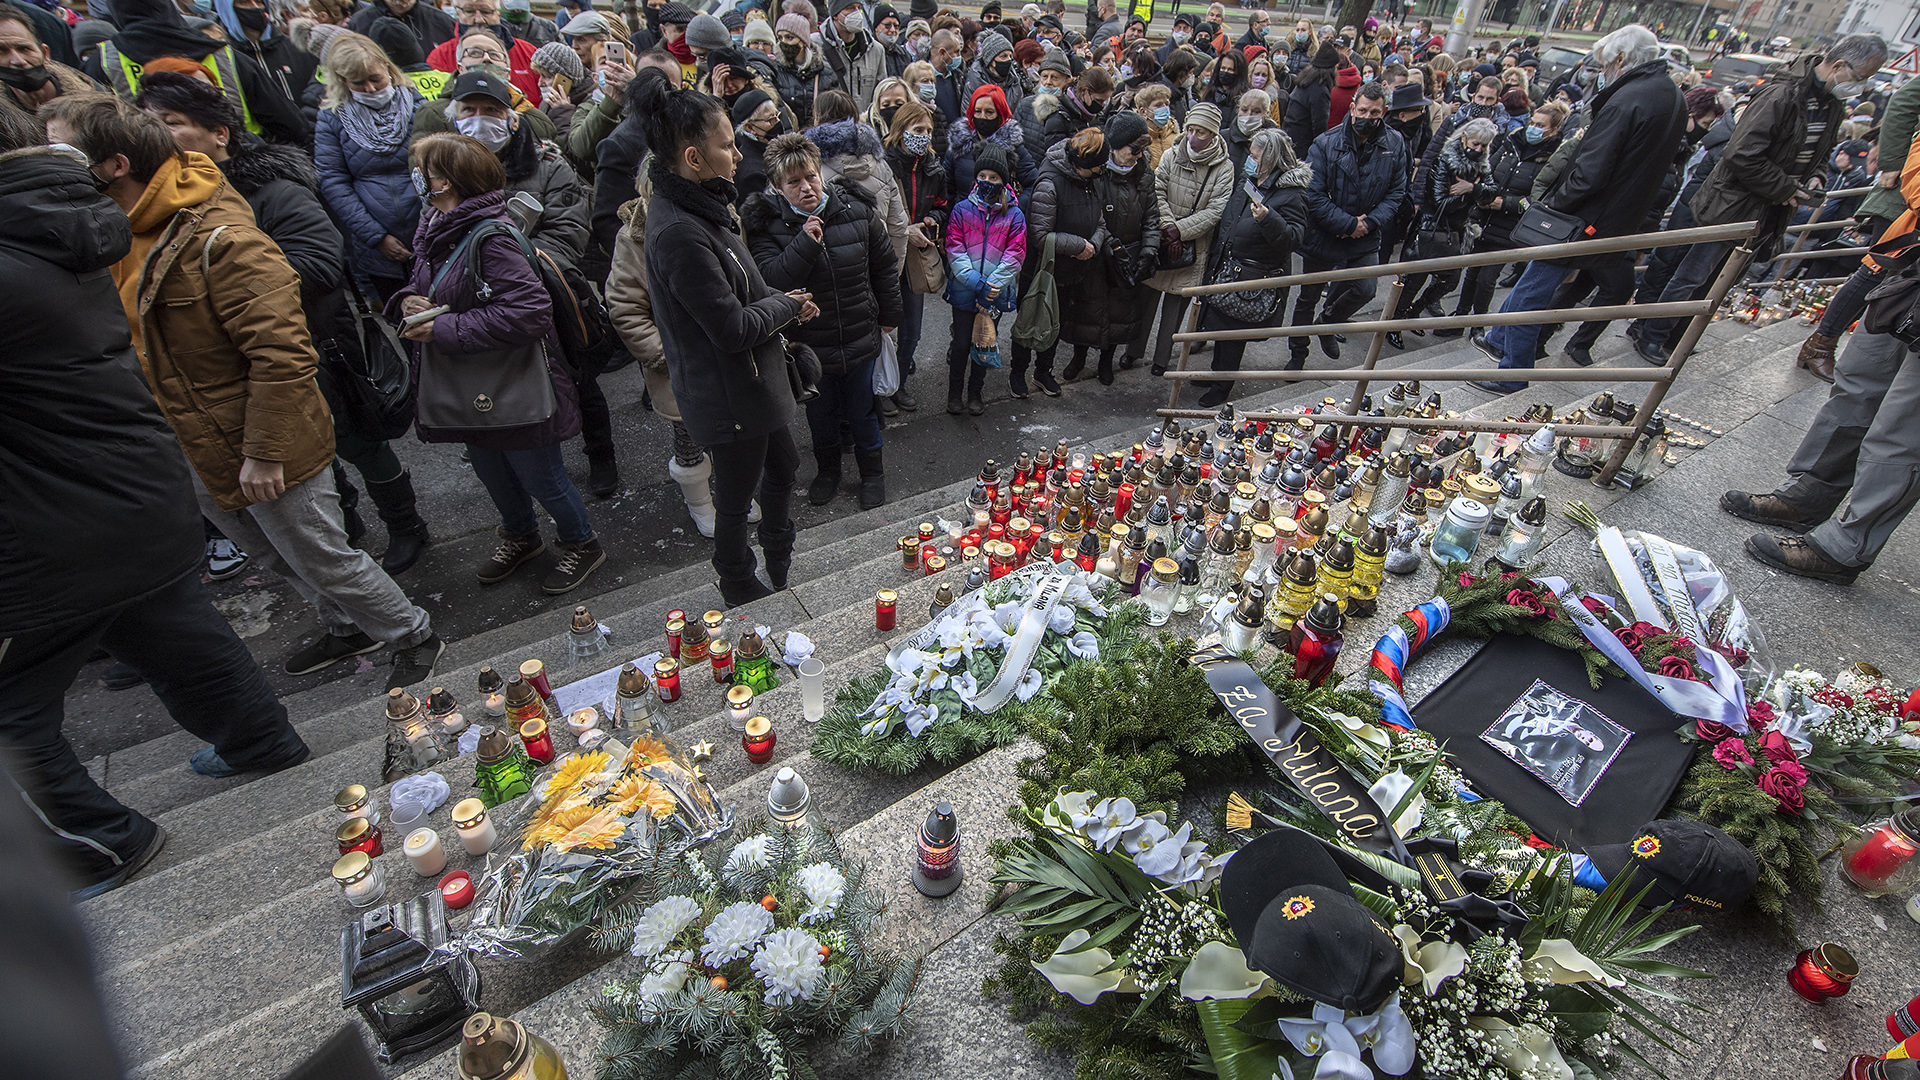 Nach dem Tod des ehemaligen Polizeipräsidenten Lucansky in einer Gefängniszelle legen Menschen in Bratislava (Slowakei) Kerzen und Blumen vor einer Polizeistation nieder. | picture alliance/dpa/TASR